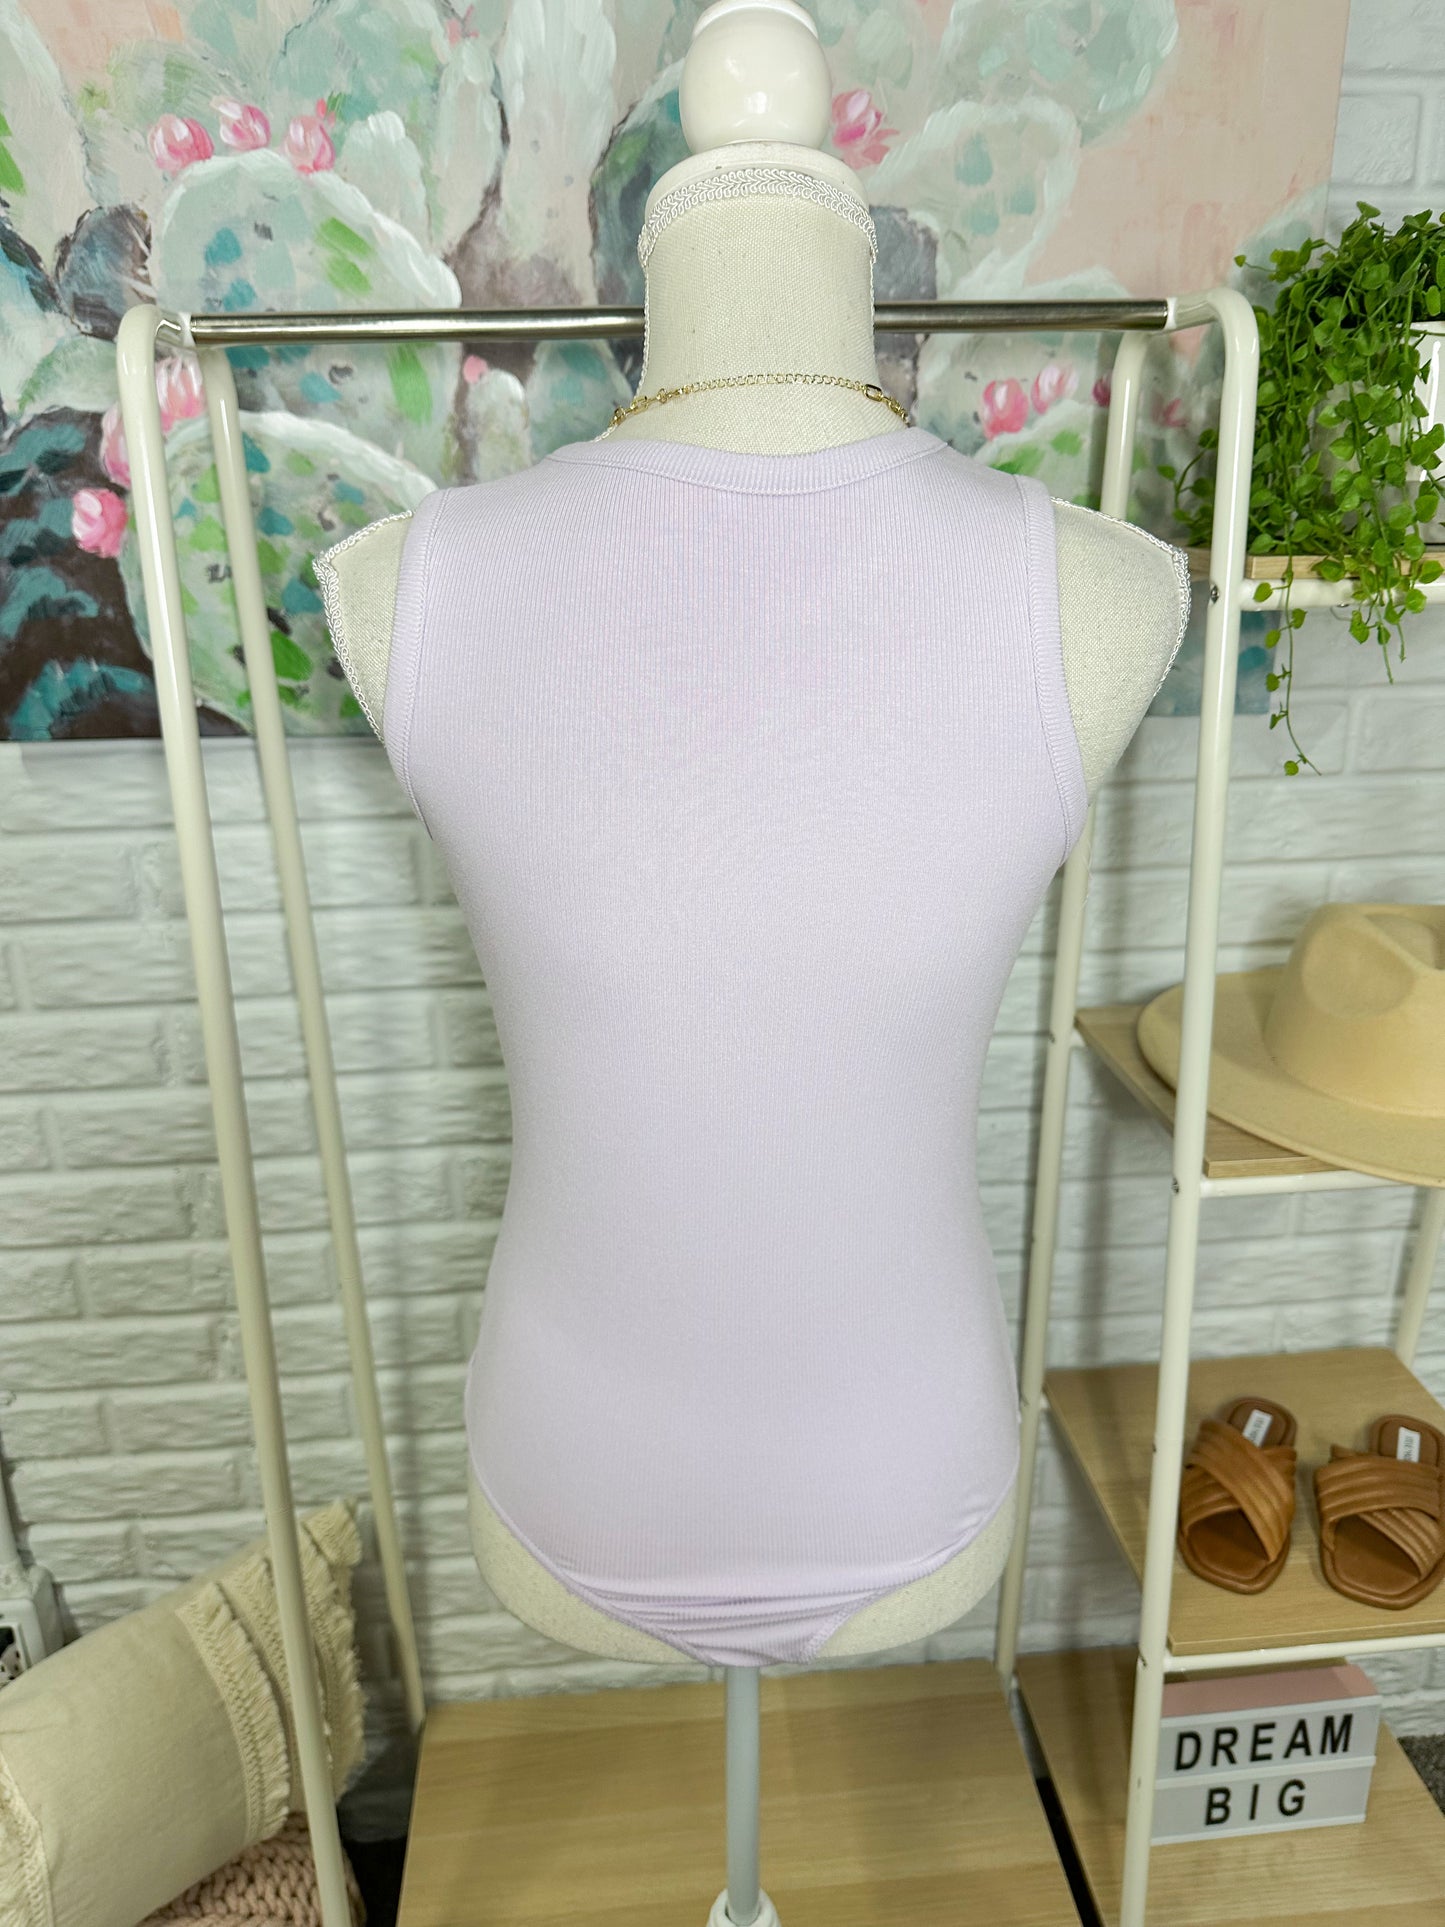 Lilac Purple Sleeveless Ribbed Bodysuit Size Medium